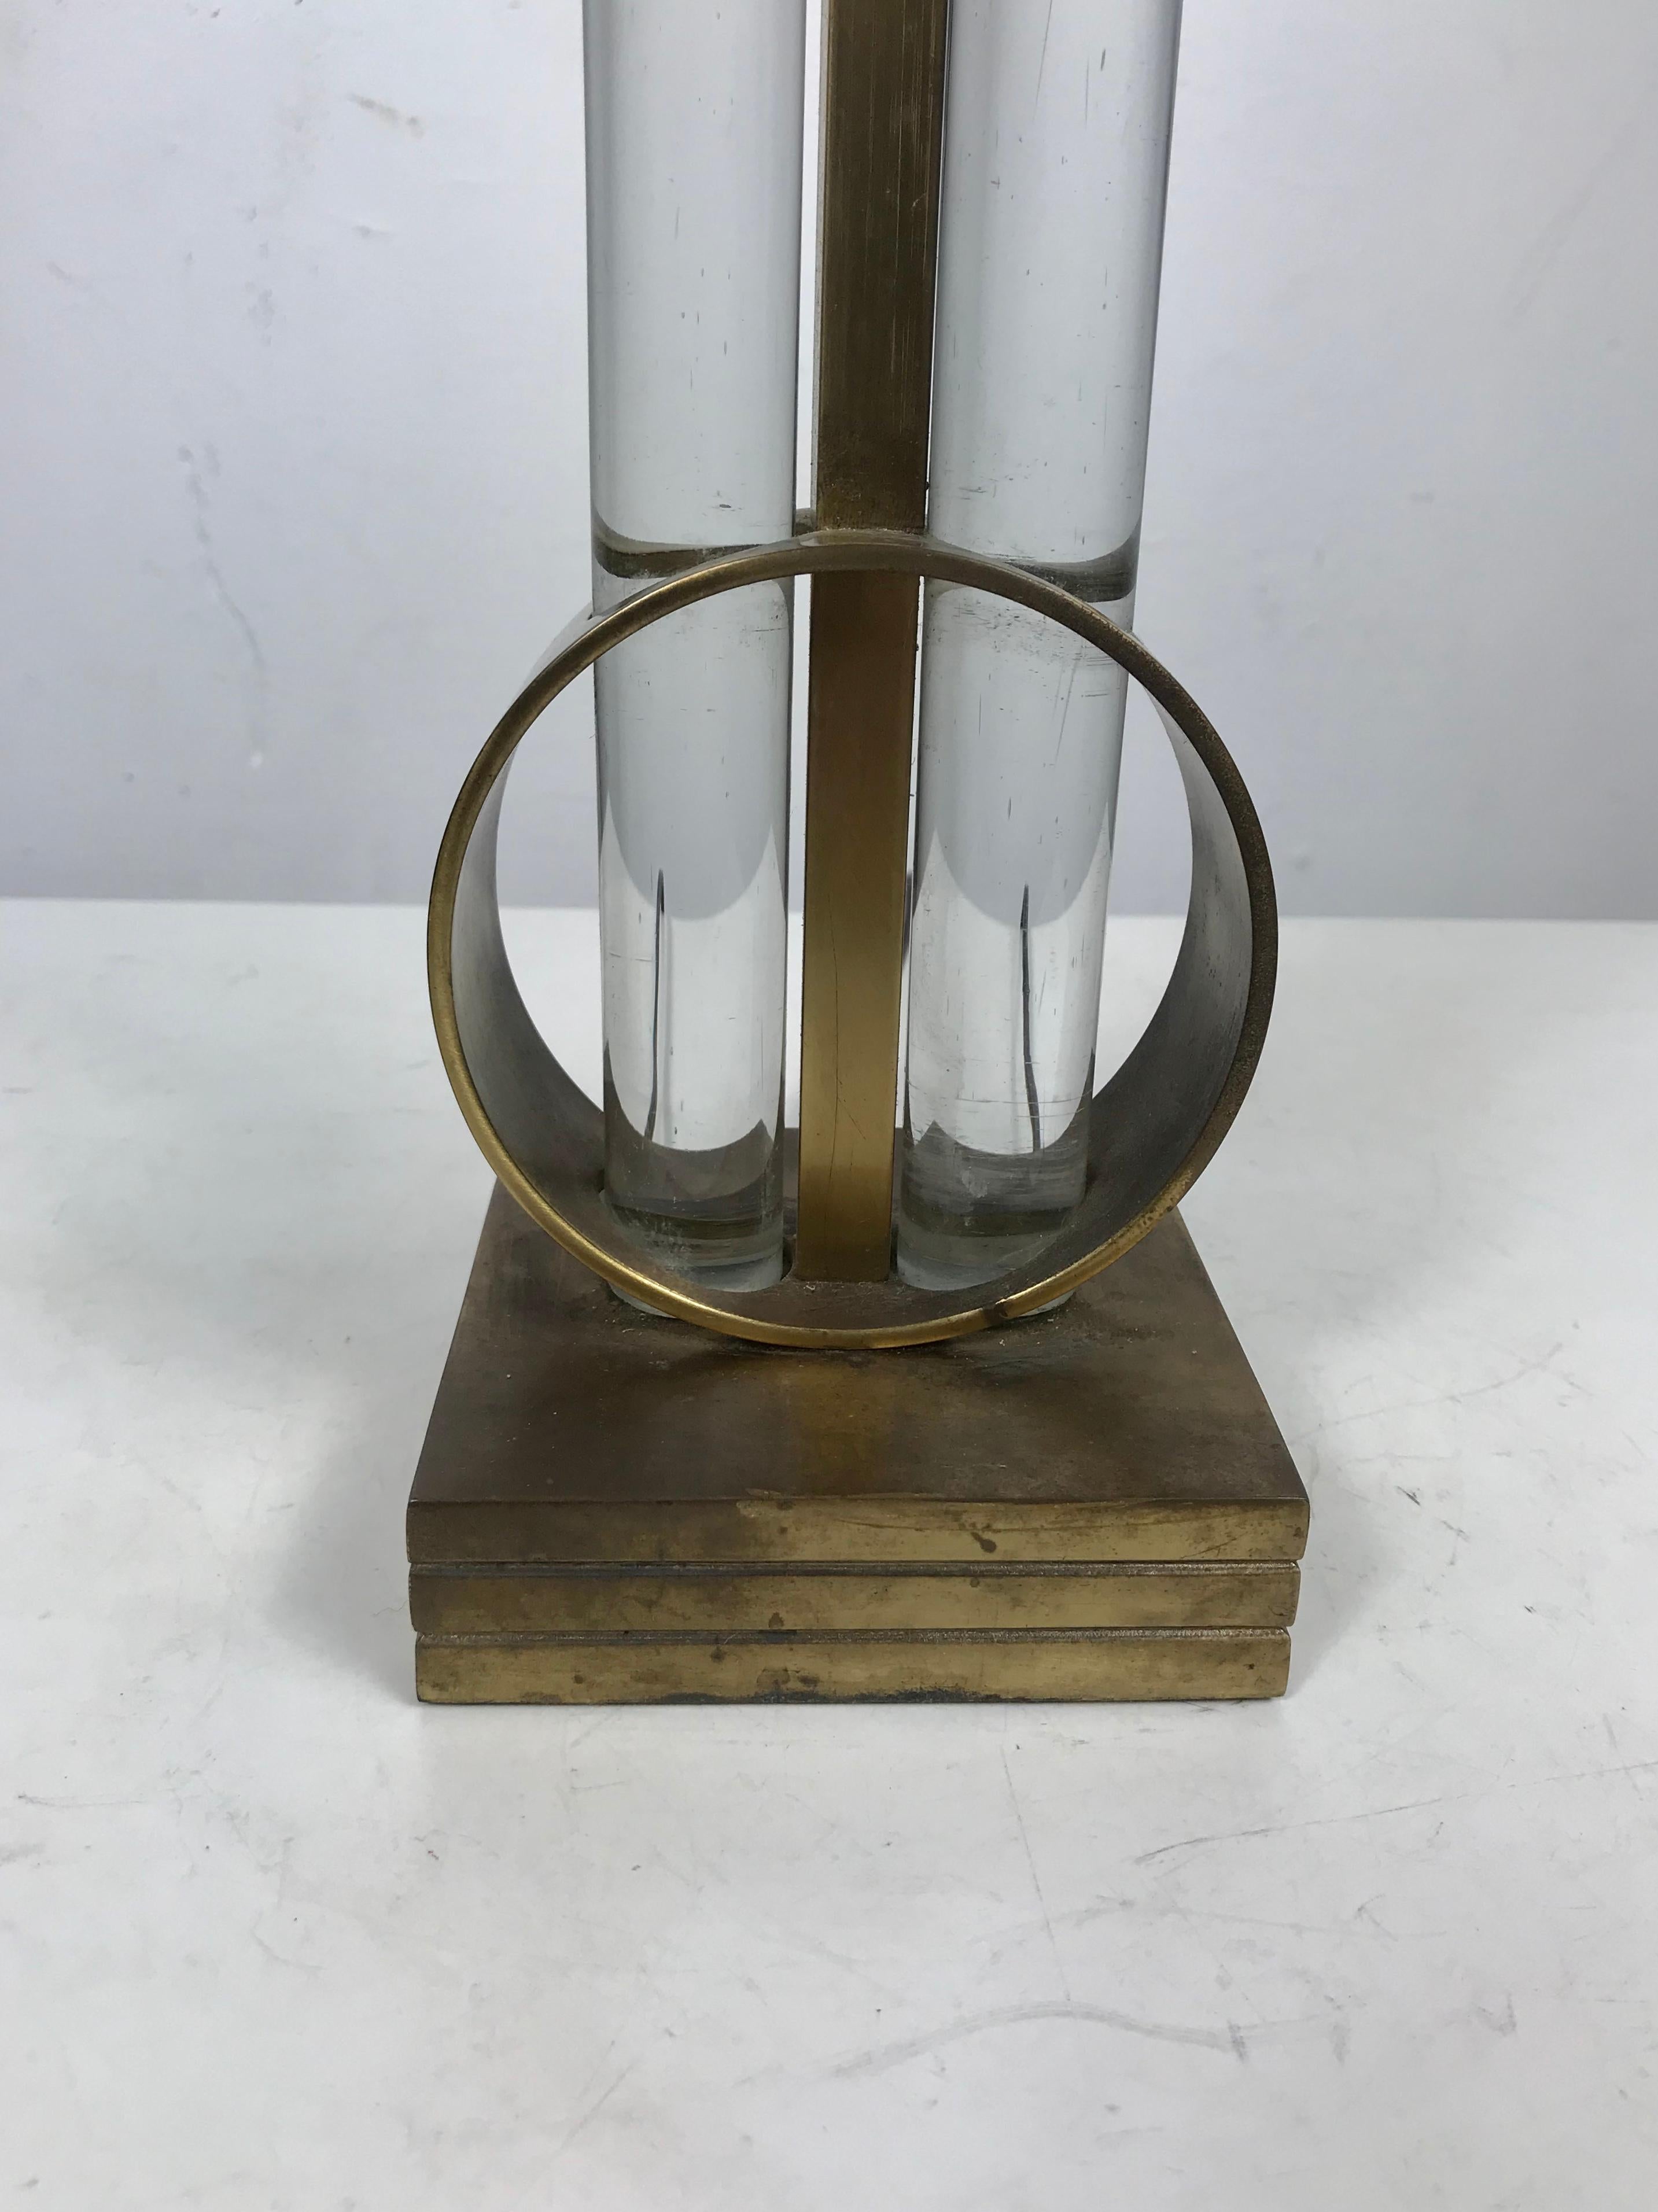 Seltene Gilbert Rhode 1930s modernist Art Deco Messing und Glas Tischlampe, erstaunliches Design, behält (selten gesehen) original Lampenschirm.